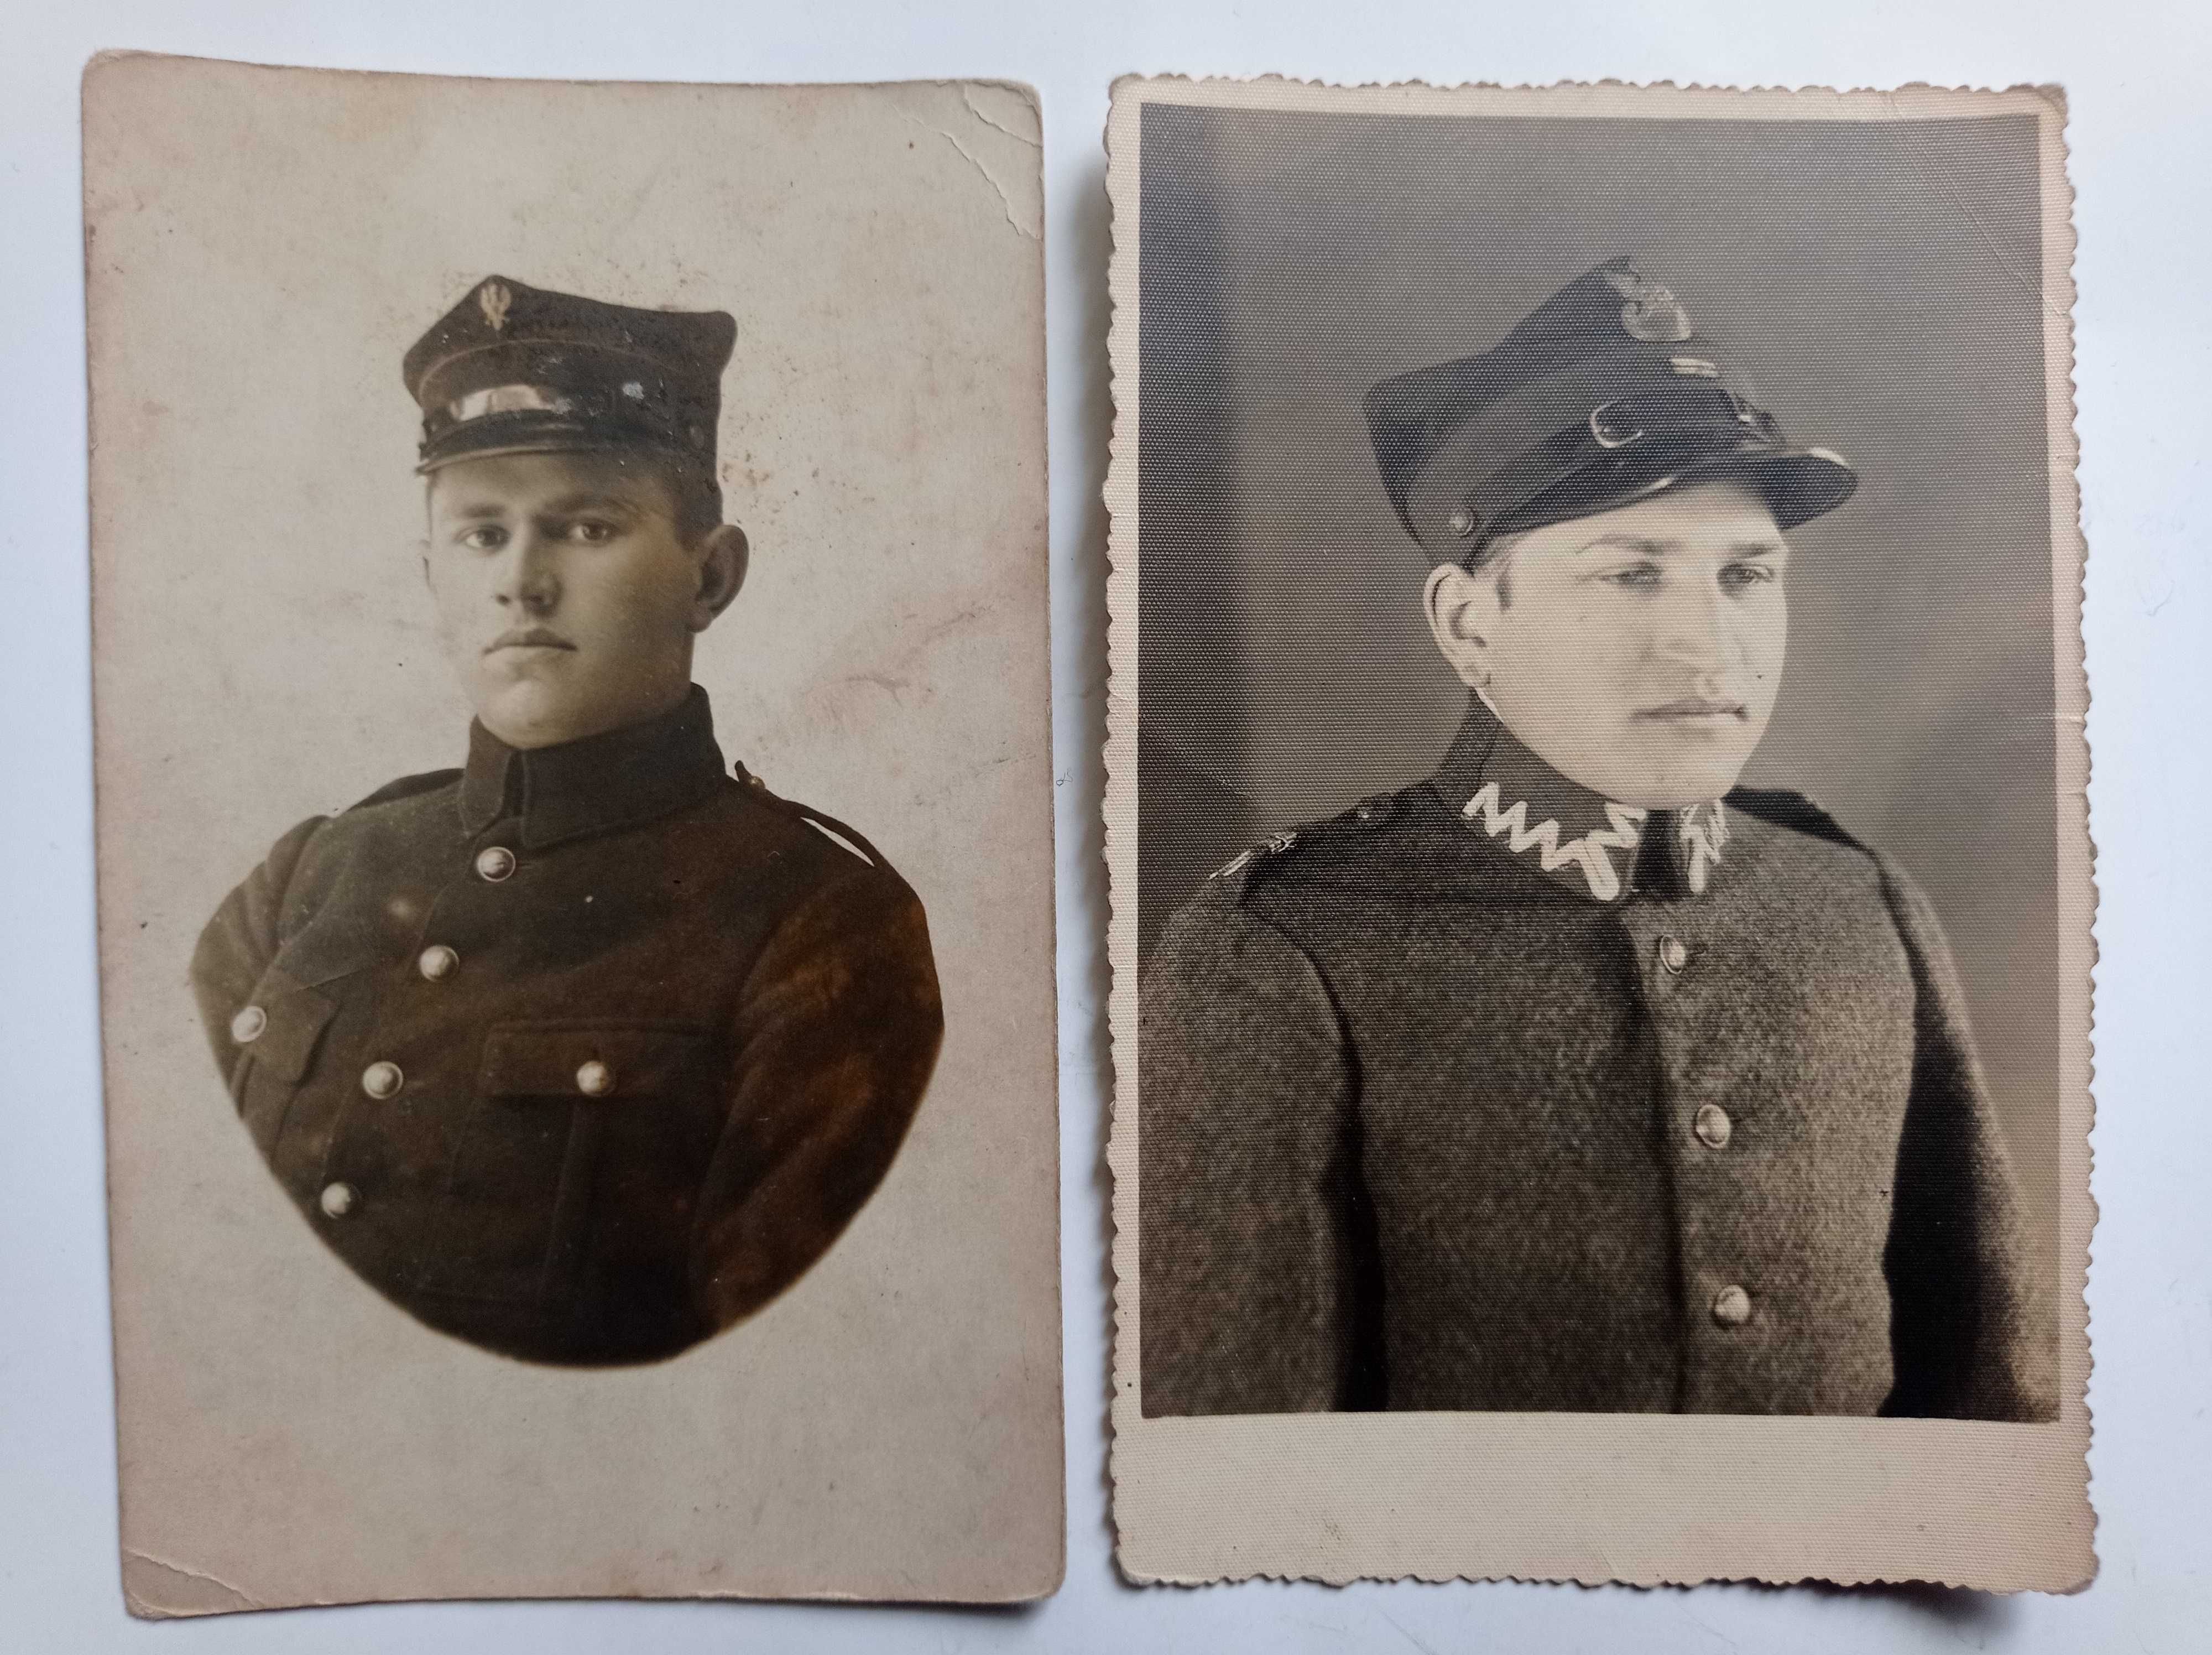 Żołnierze - stare zdjęcia 1920-40 - Sosnowiec, Kraków, Dukla -11 szt.